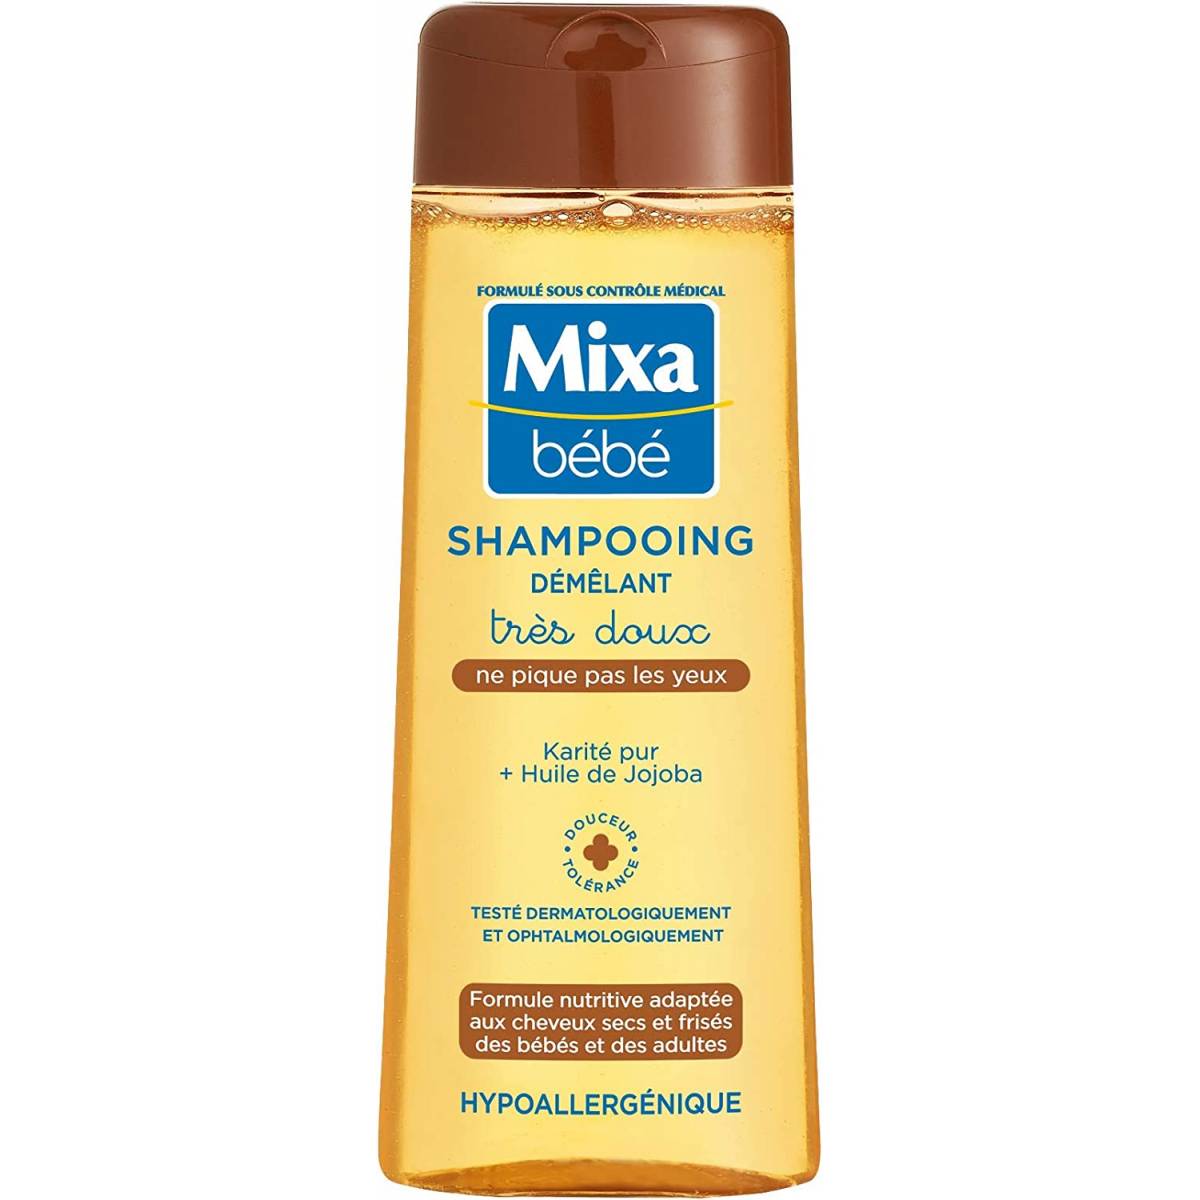 Mixa Bébé Very gentle detangling shampoo pure shea butter + jojoba oil